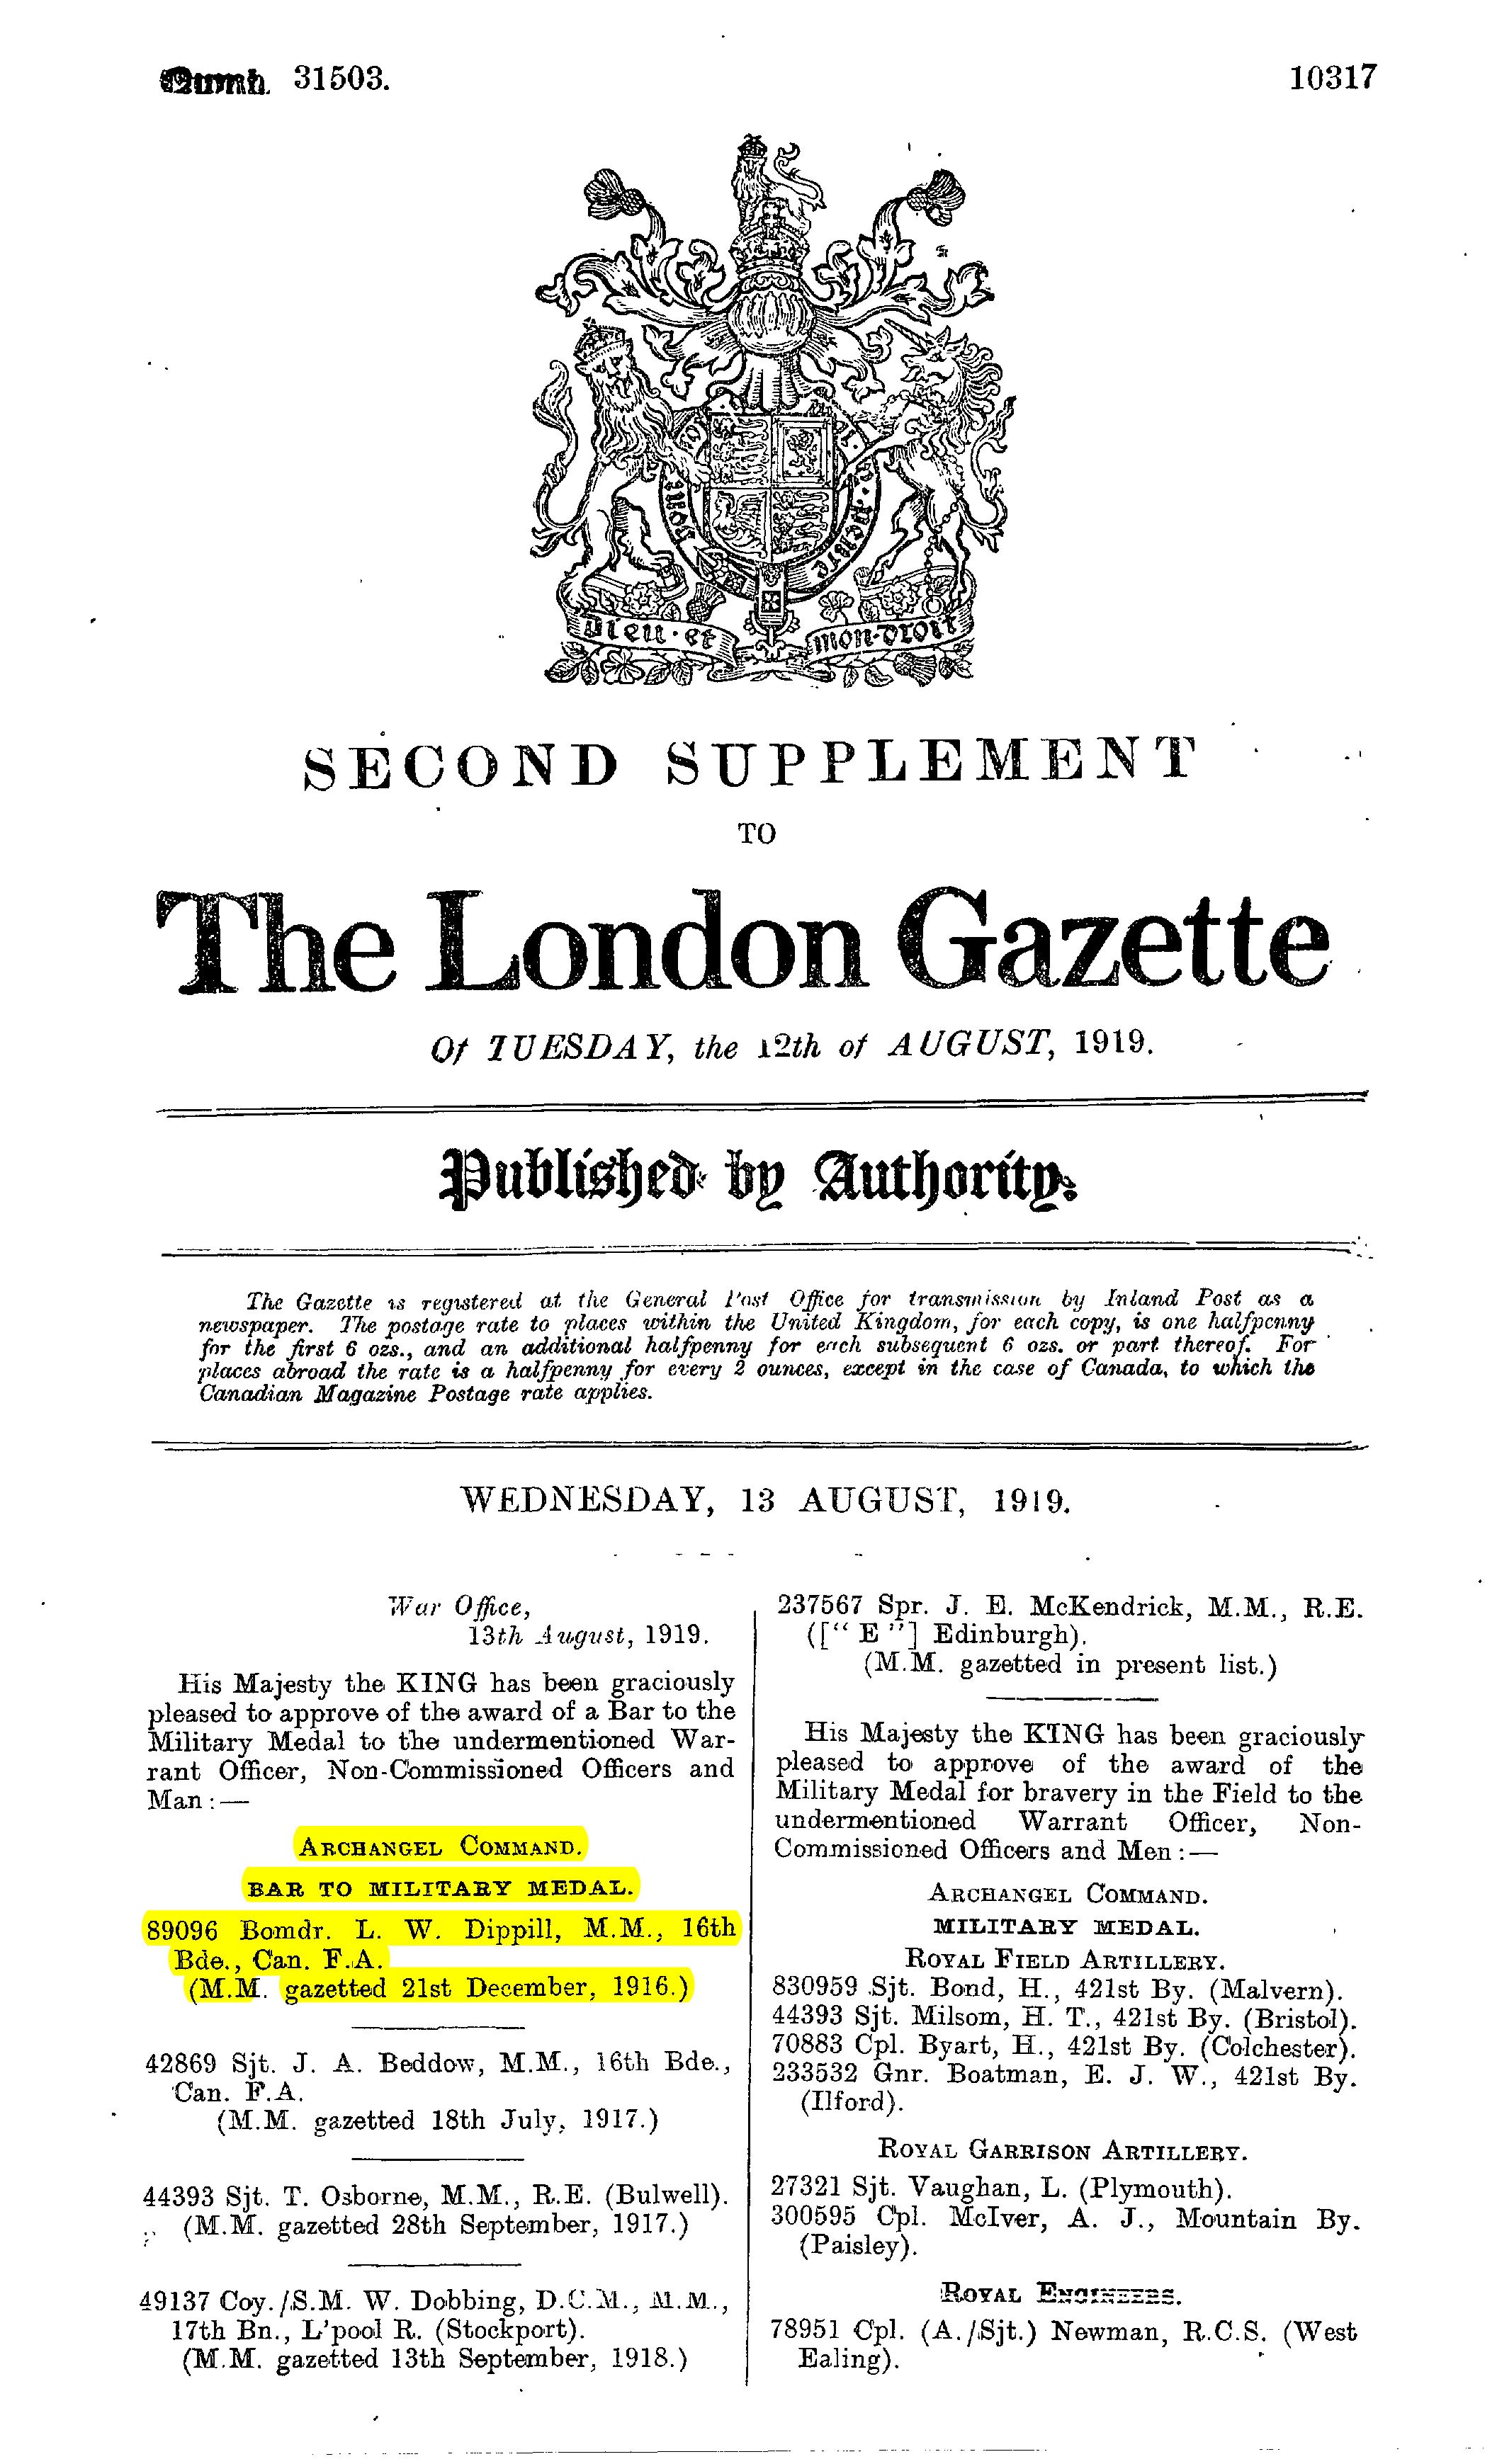 London Gazette, Supplement to 12 August 1919